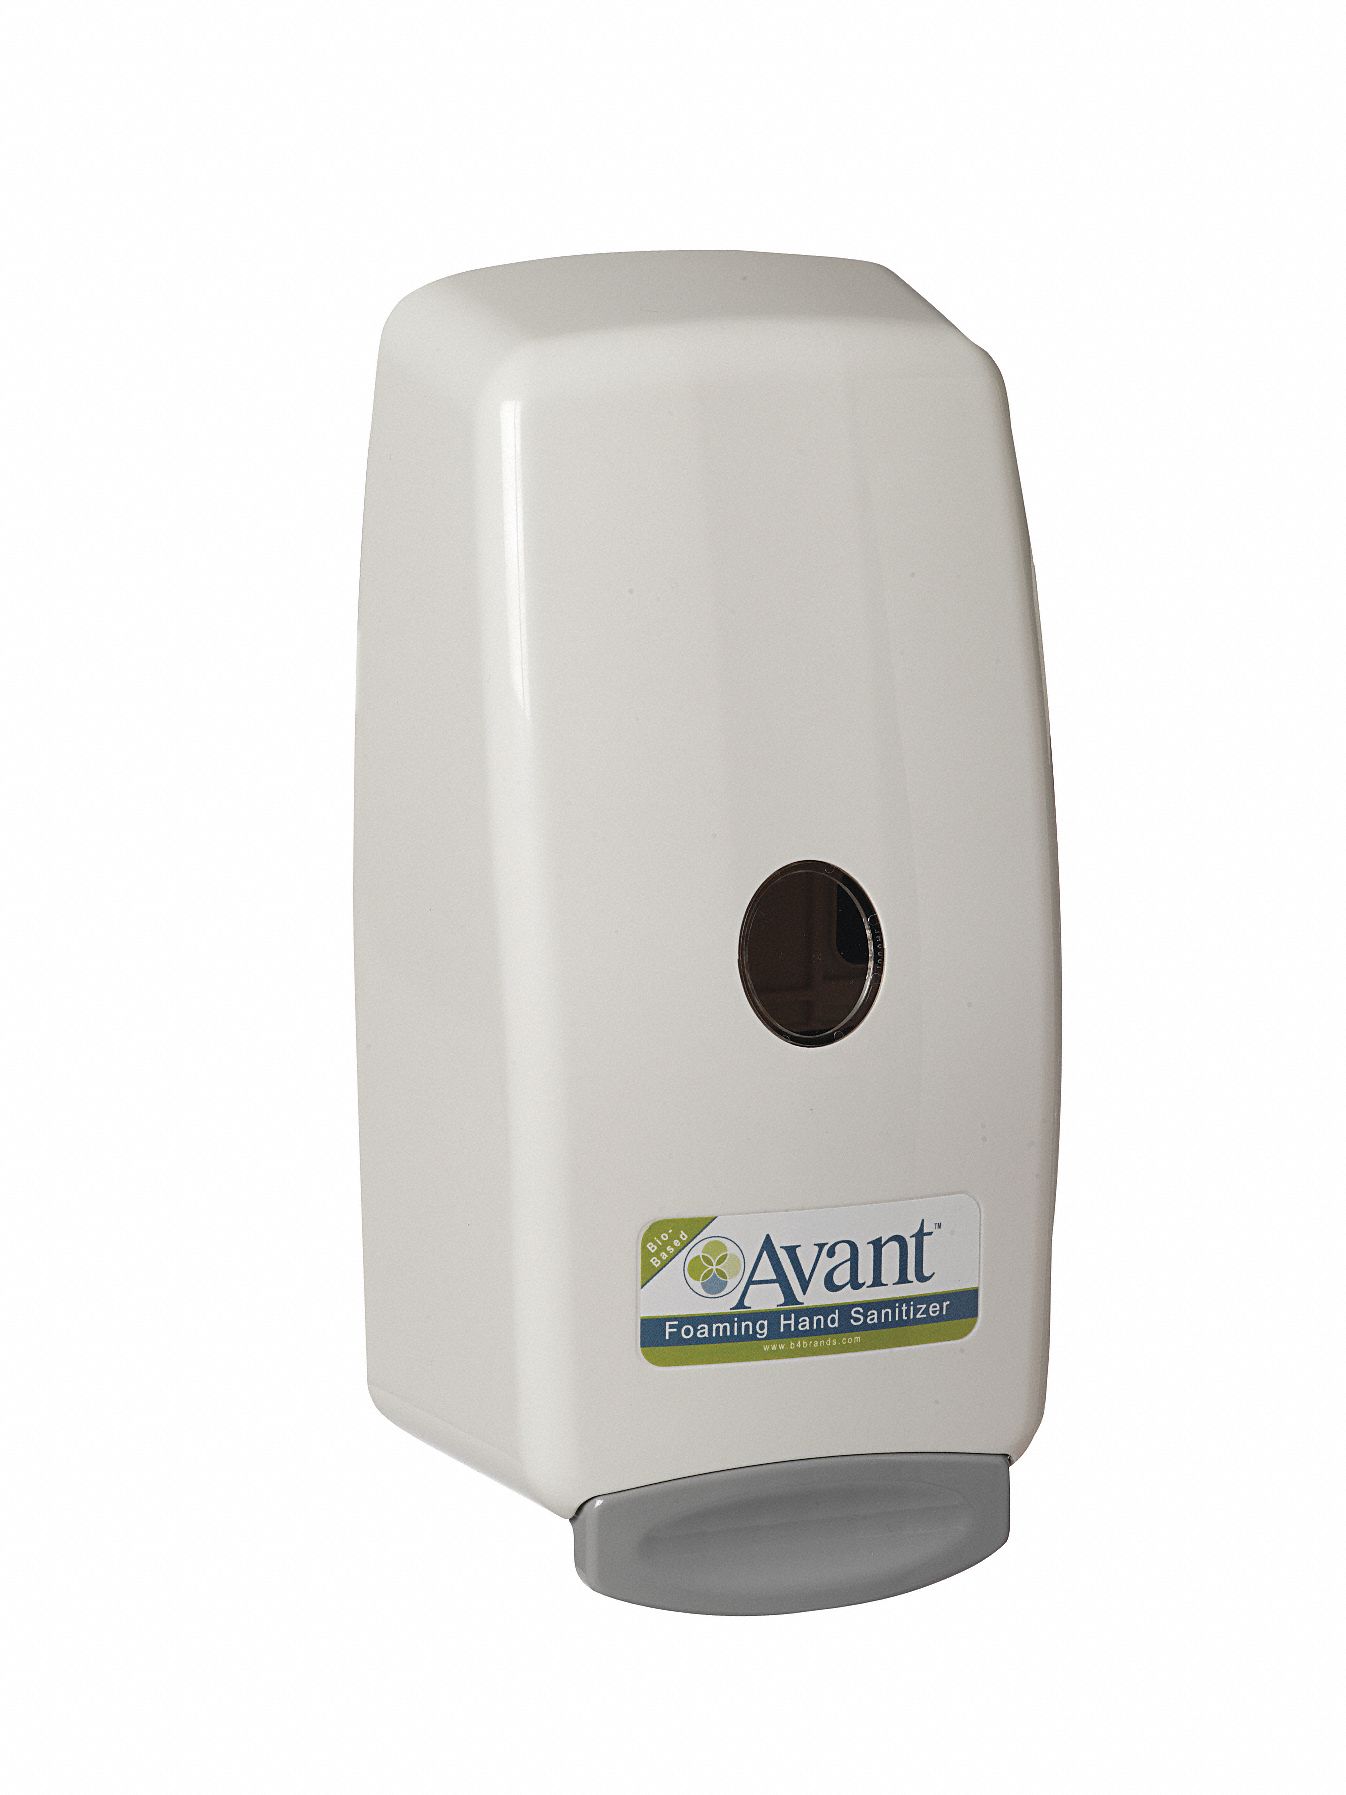 Soap Dispenser: Avant, Foam, 1,000 mL Refill Size, White